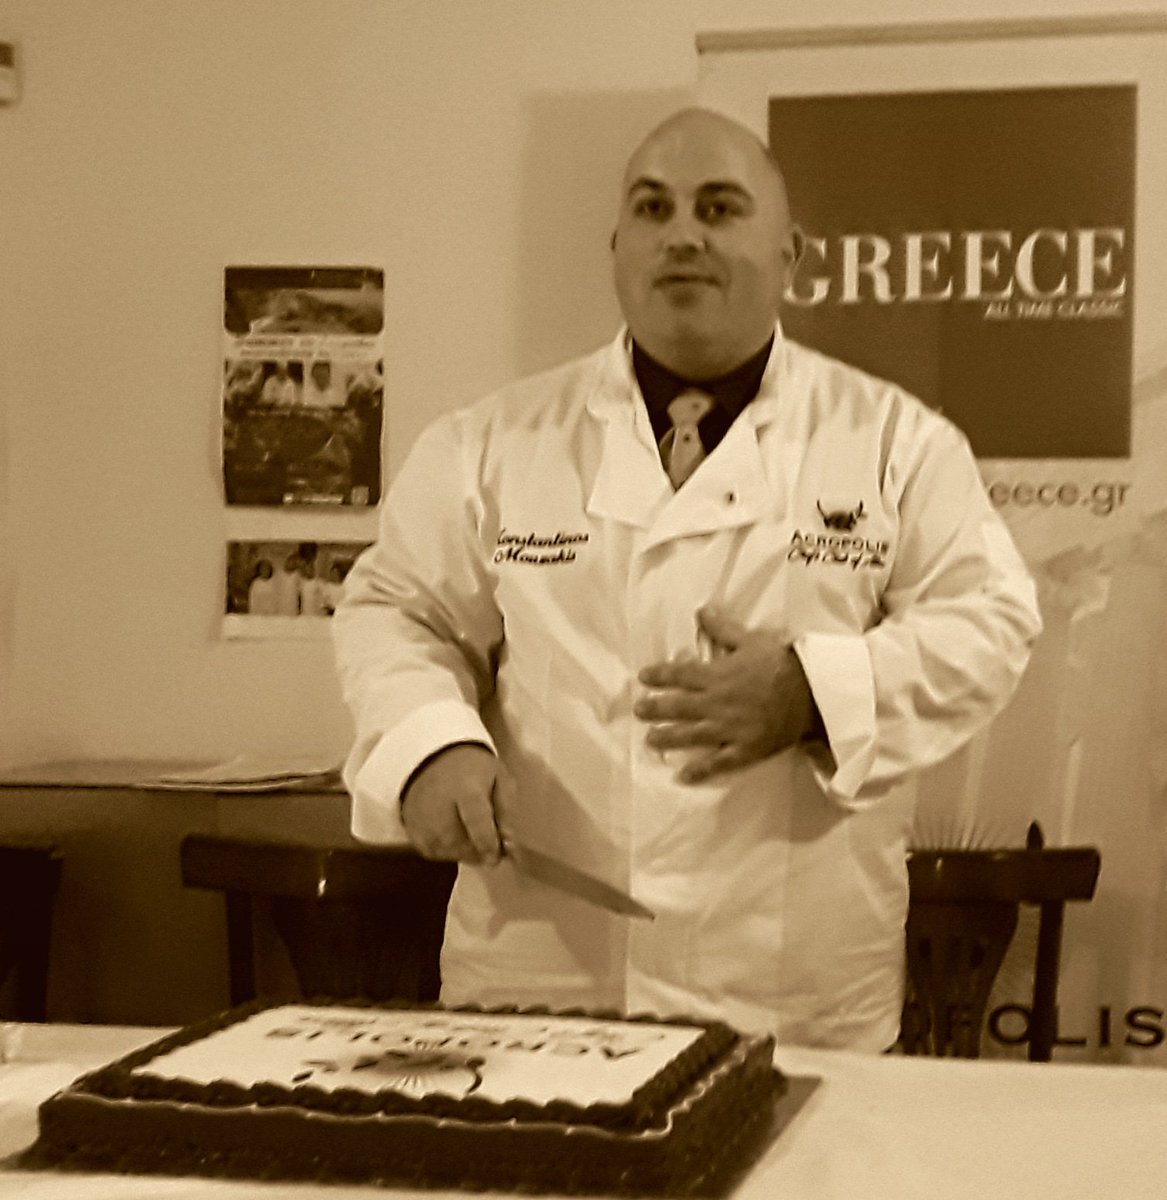 Τιμή μου που εκπροσωπώ μια ομάδα συναδέλφων για την γαστρονομία και τον οίνο, τον πολιτισμό και την κουλτούρα, την ιστορία και τα ήθη-έθιμα της Ελλάδας μας!!! 
Συνεχίζουμε το έργο μας ... Με την @OfAttica 
#chefclubofattica_acropolis #chef_europe_2015 #ceuco #chefclubofattica